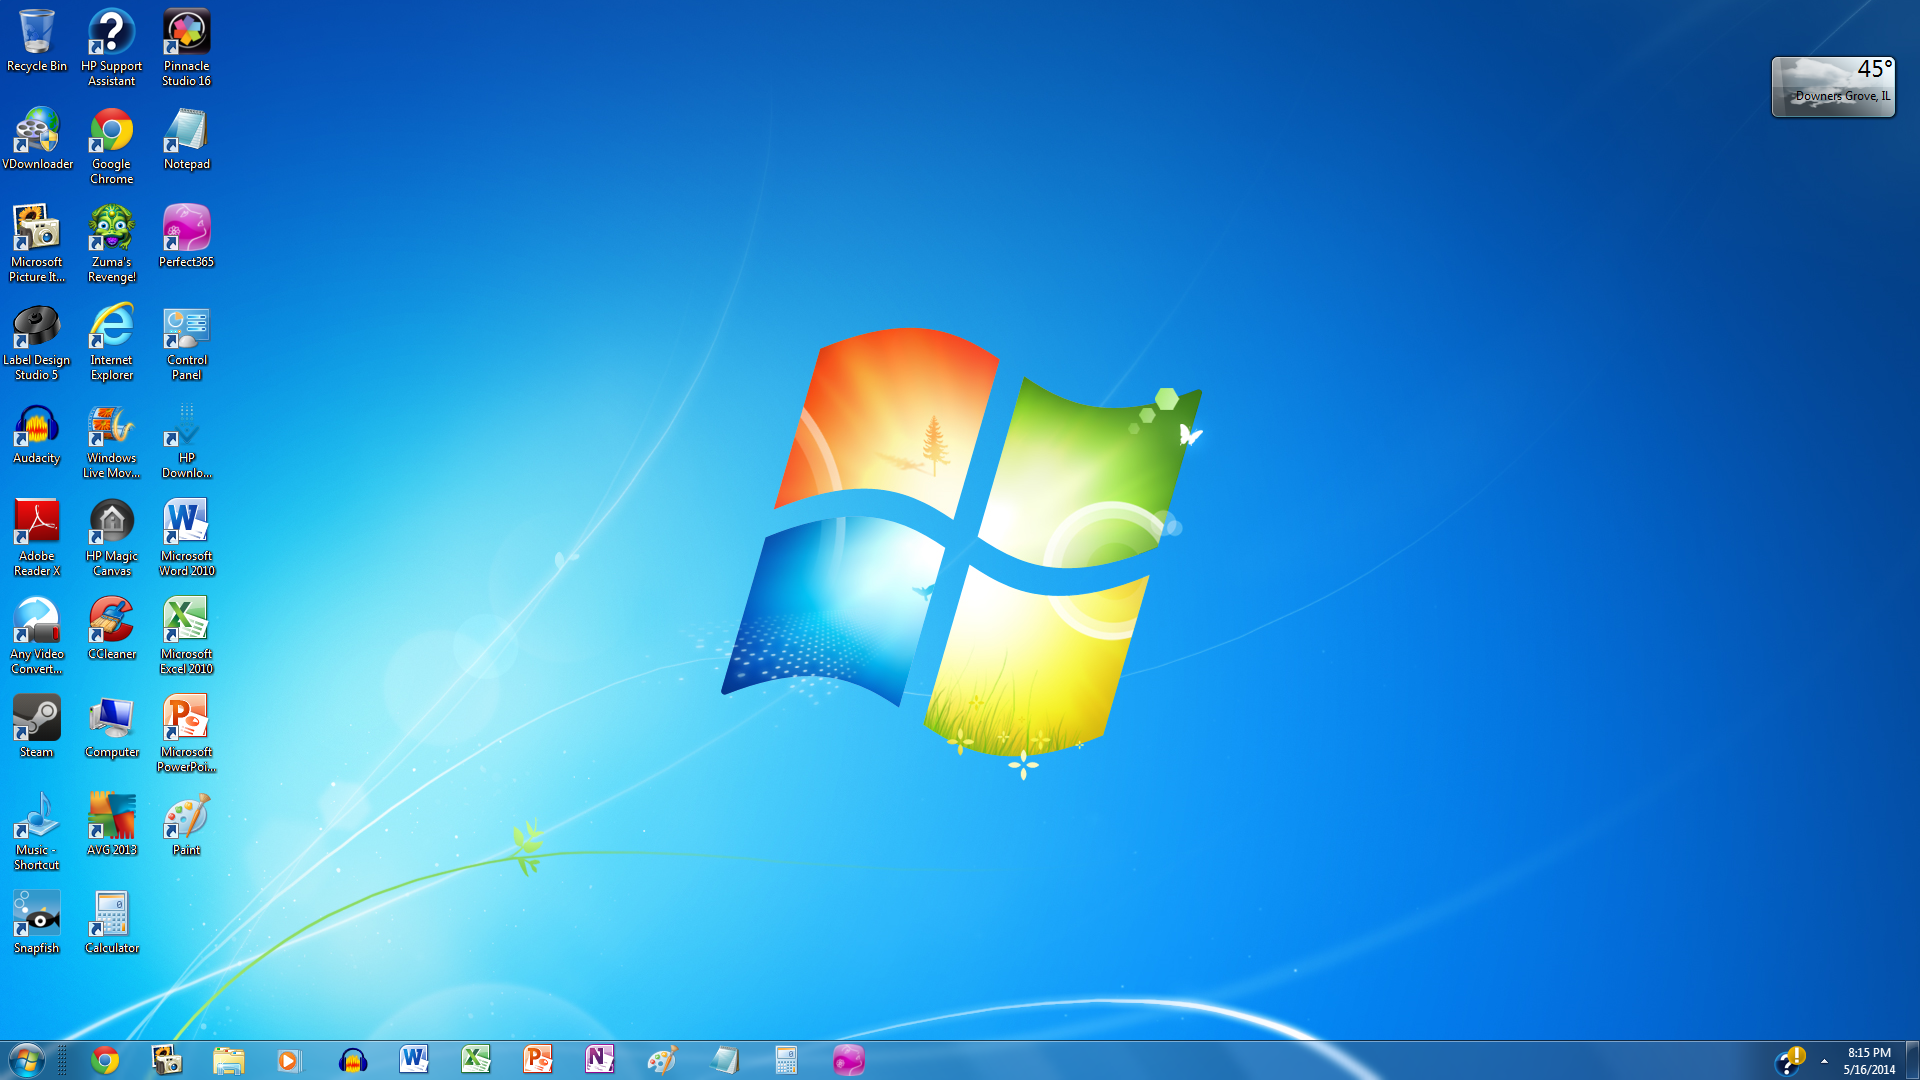 Hình nền desktop Windows 7 đặc sắc, sẽ làm bạn phấn khích và có thêm động lực để làm việc hăng say. Hãy thưởng thức ngay những hình nền vô cùng ấn tượng này nhé.